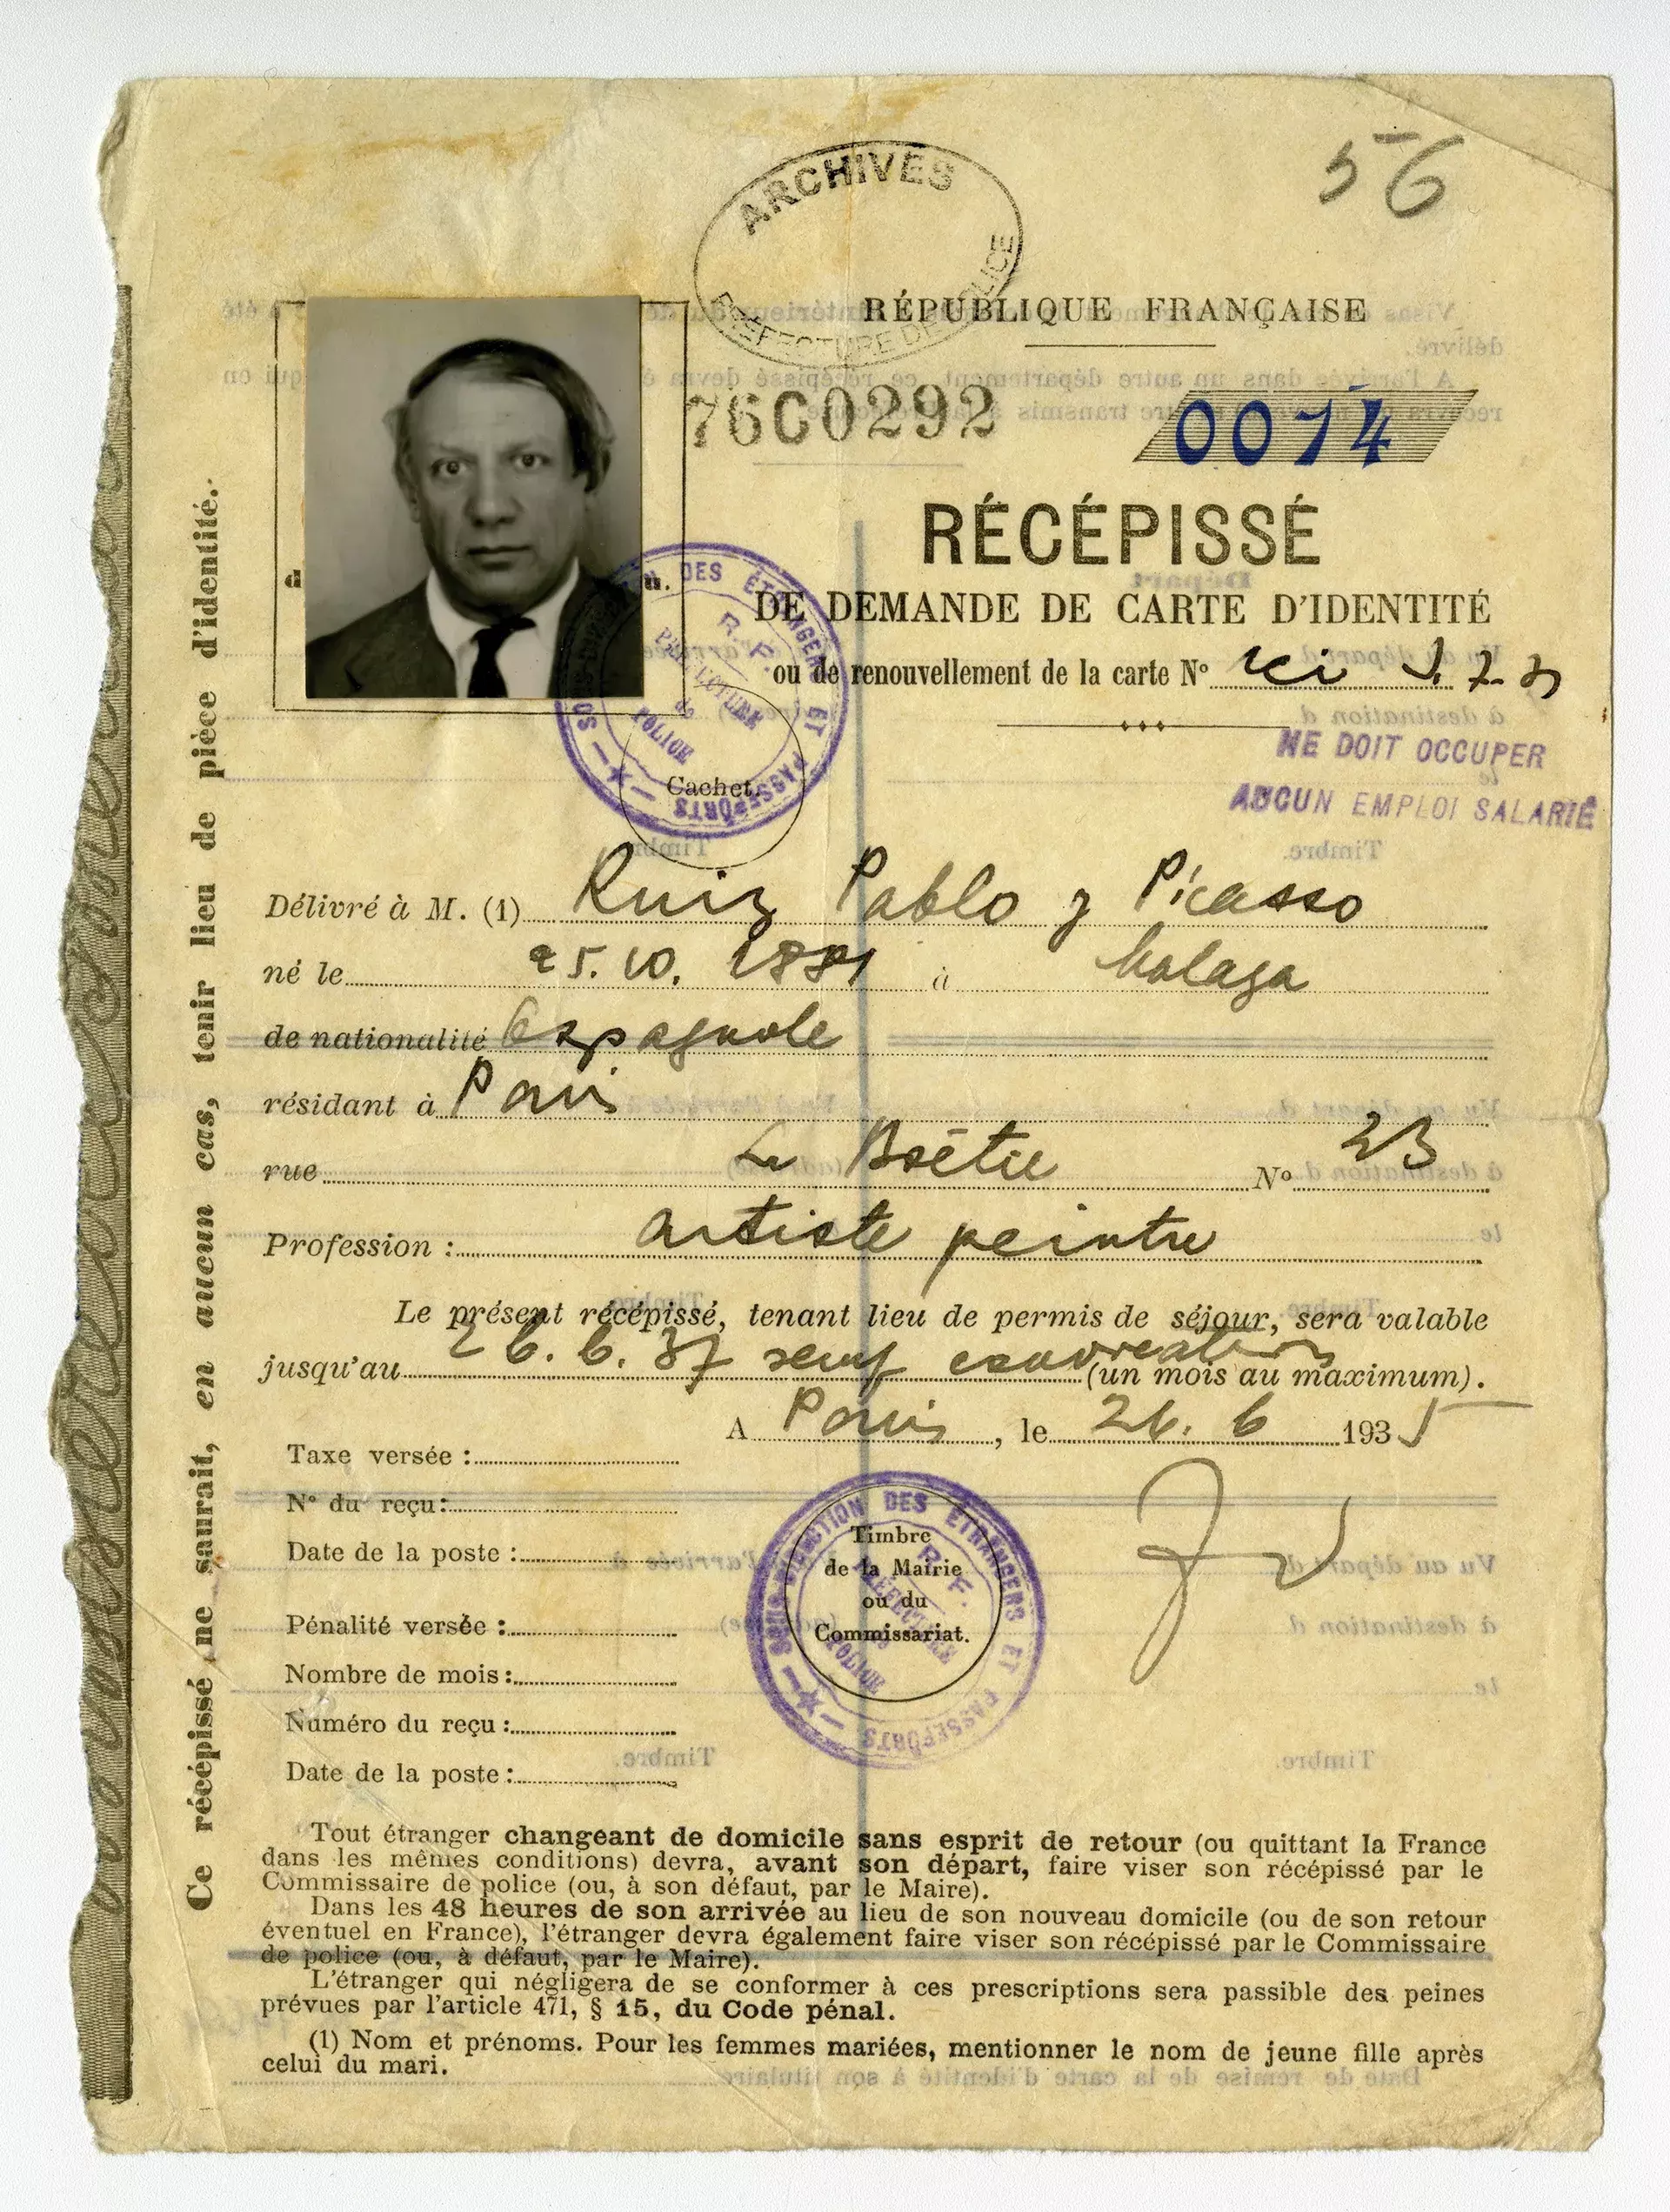 Το επίσημο έγγραφο με την ταυτότητα του Πικάσο ως αλλοδαπού στο Παρίσι, το 1935. Αρχεία Αστυνομικής Νομαρχίας Παρισιού